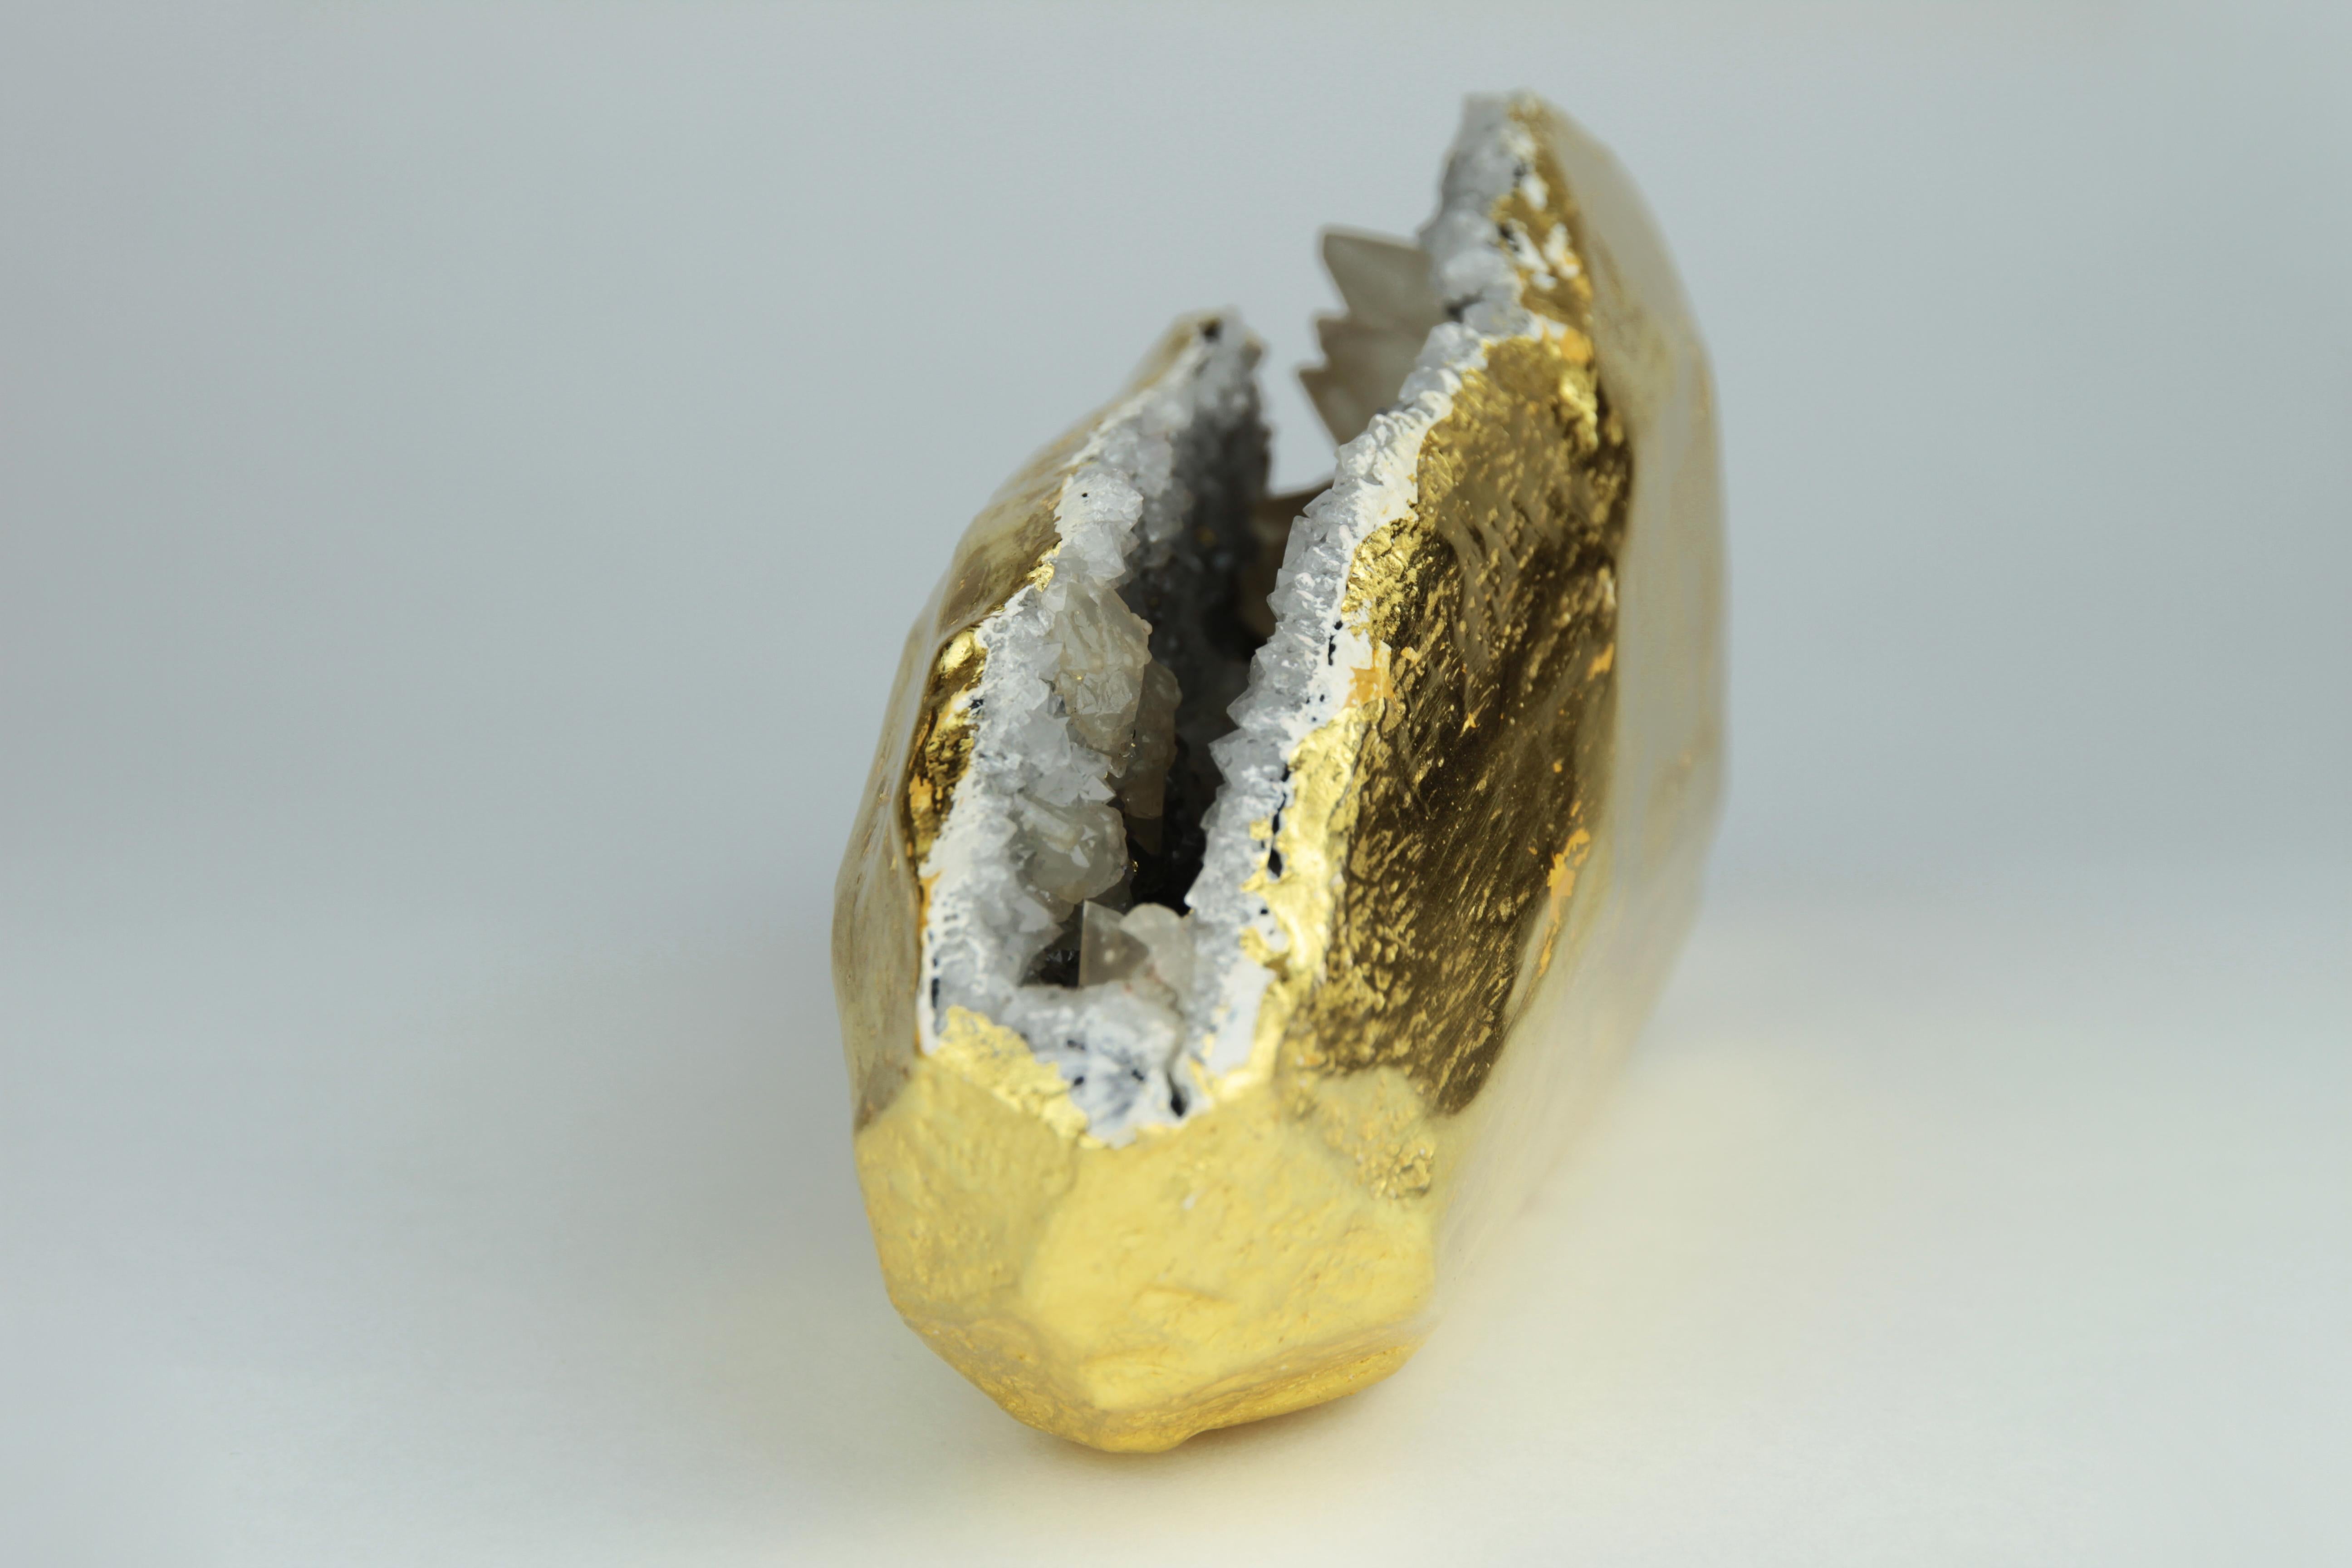 Cette géode de cristal unique a été méticuleusement dorée à la feuille d'or 22 carats.
Cette sculpture naturelle unique en son genre sera du plus bel effet sur un bureau, une table basse ou tout autre endroit où elle peut être vue de tous les côtés.